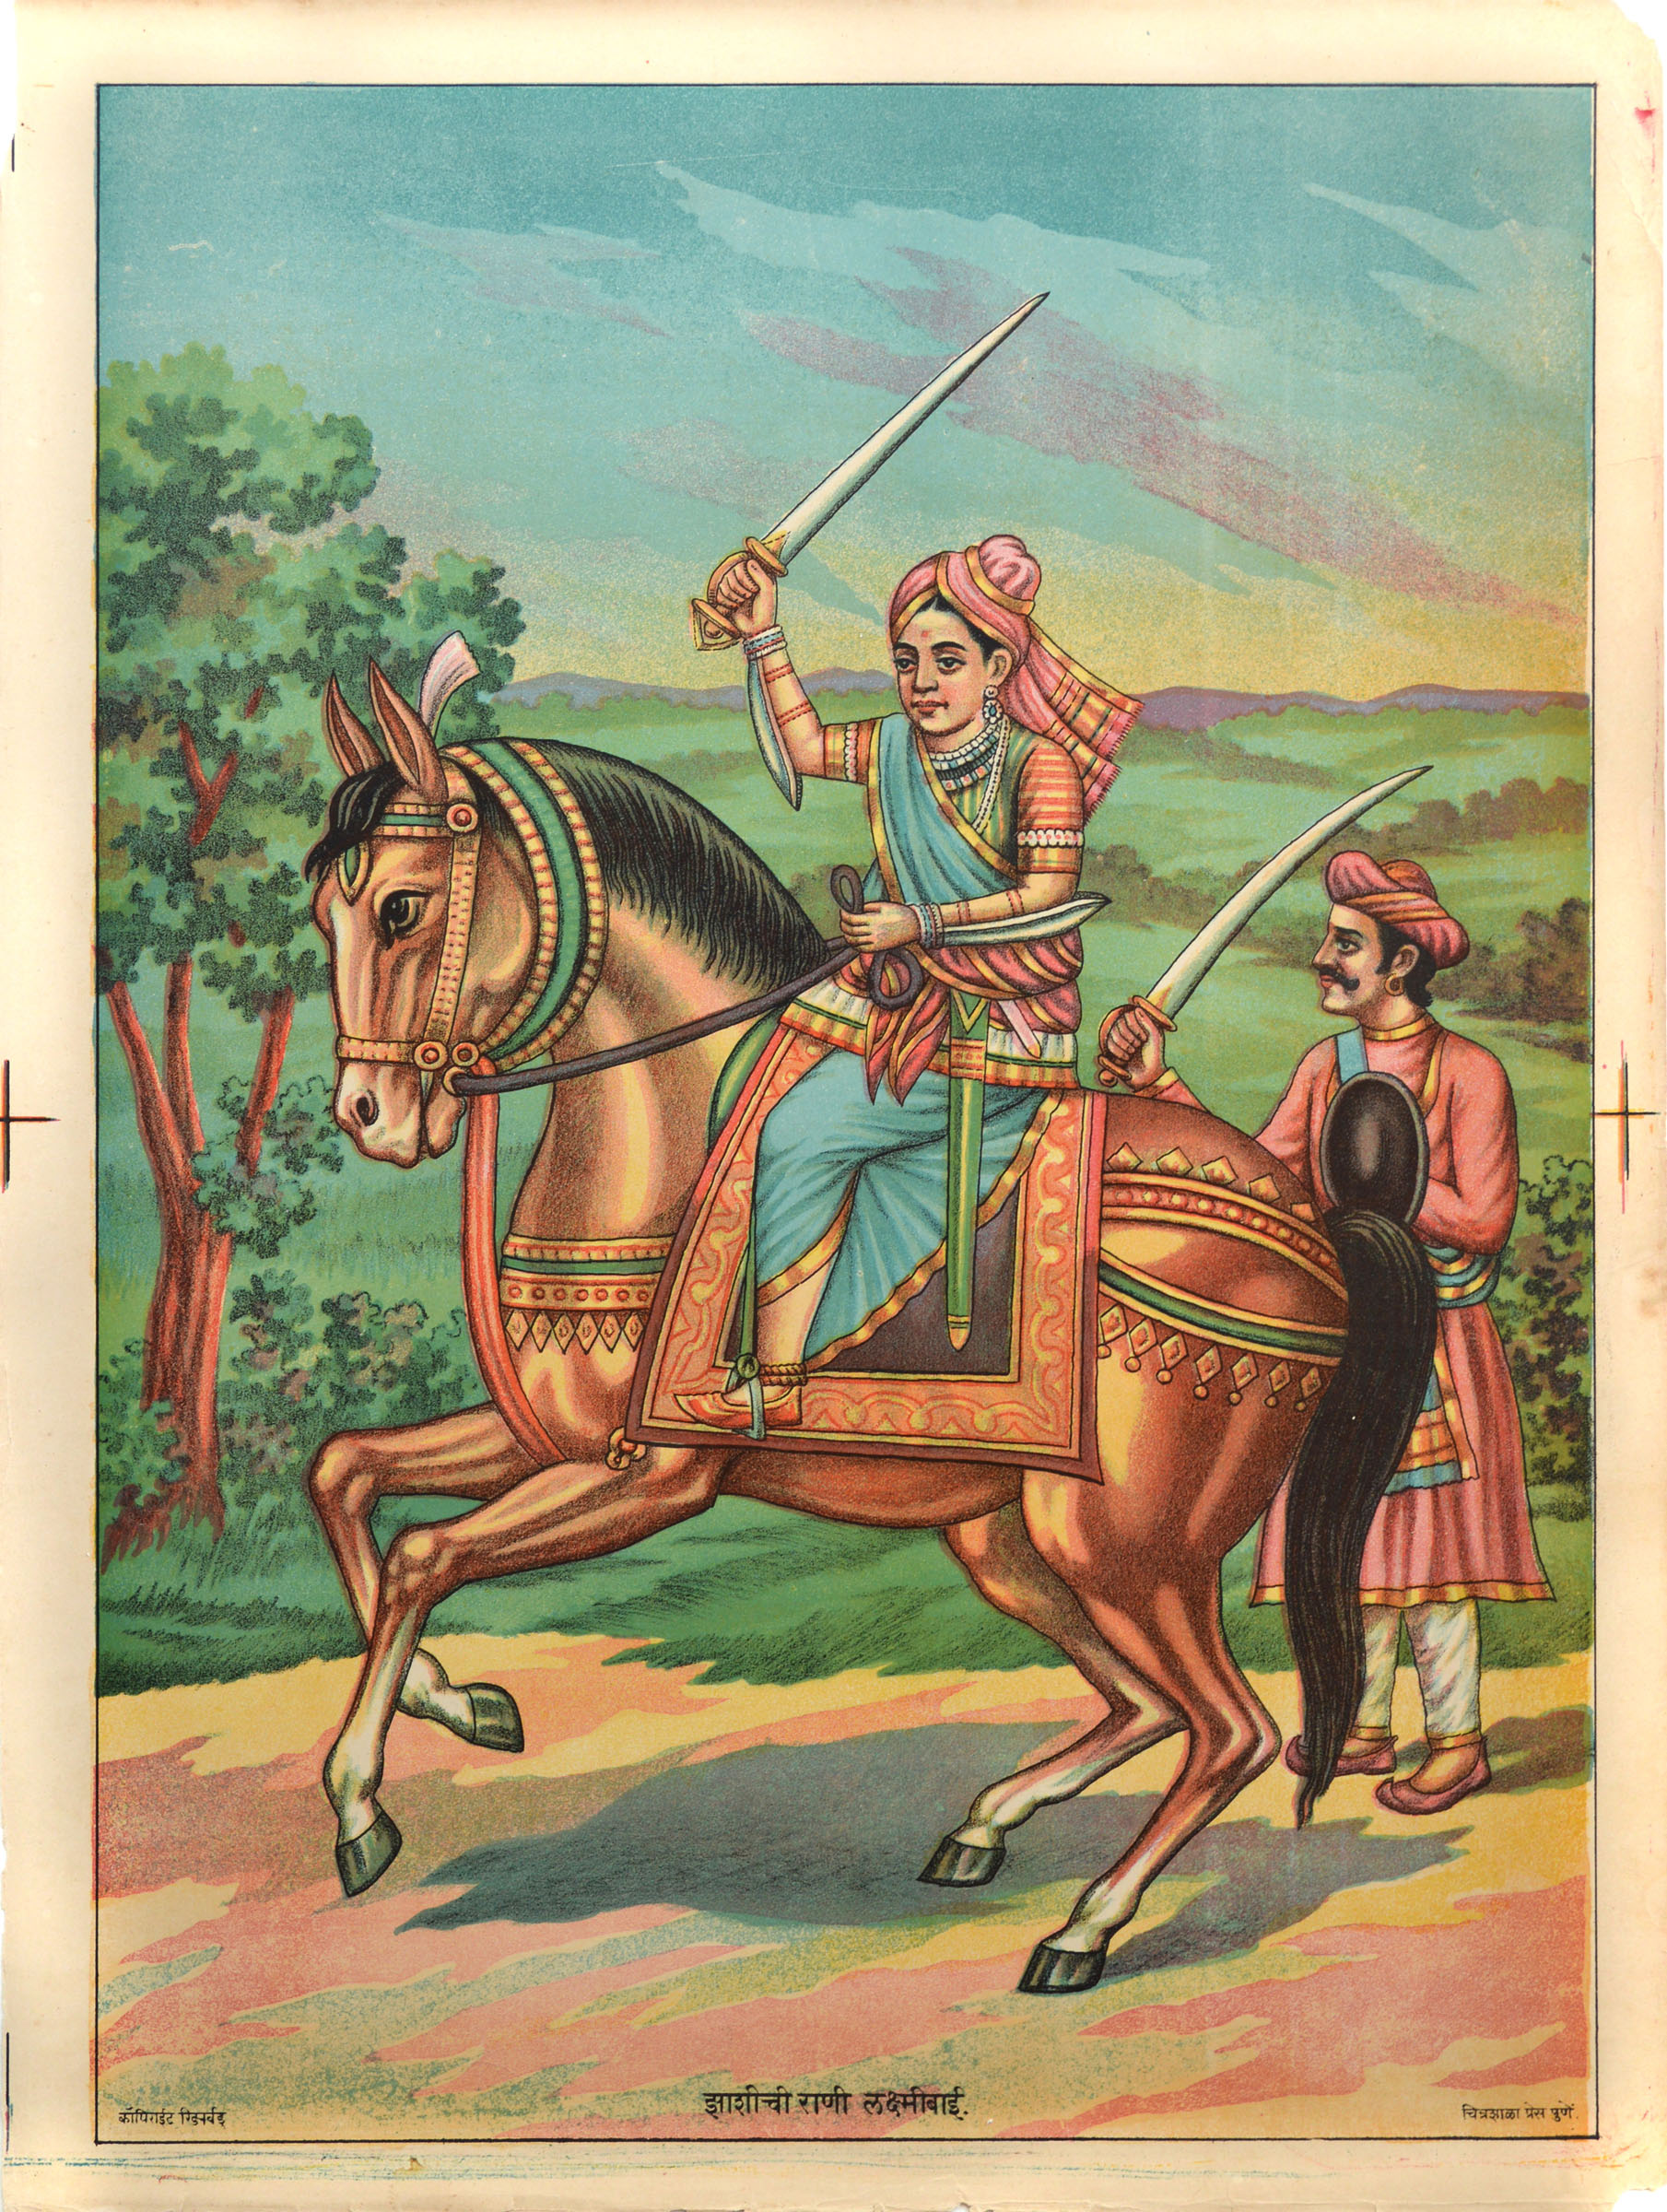 Lakshmibai, the Rani of Jhansi (1828-1858)